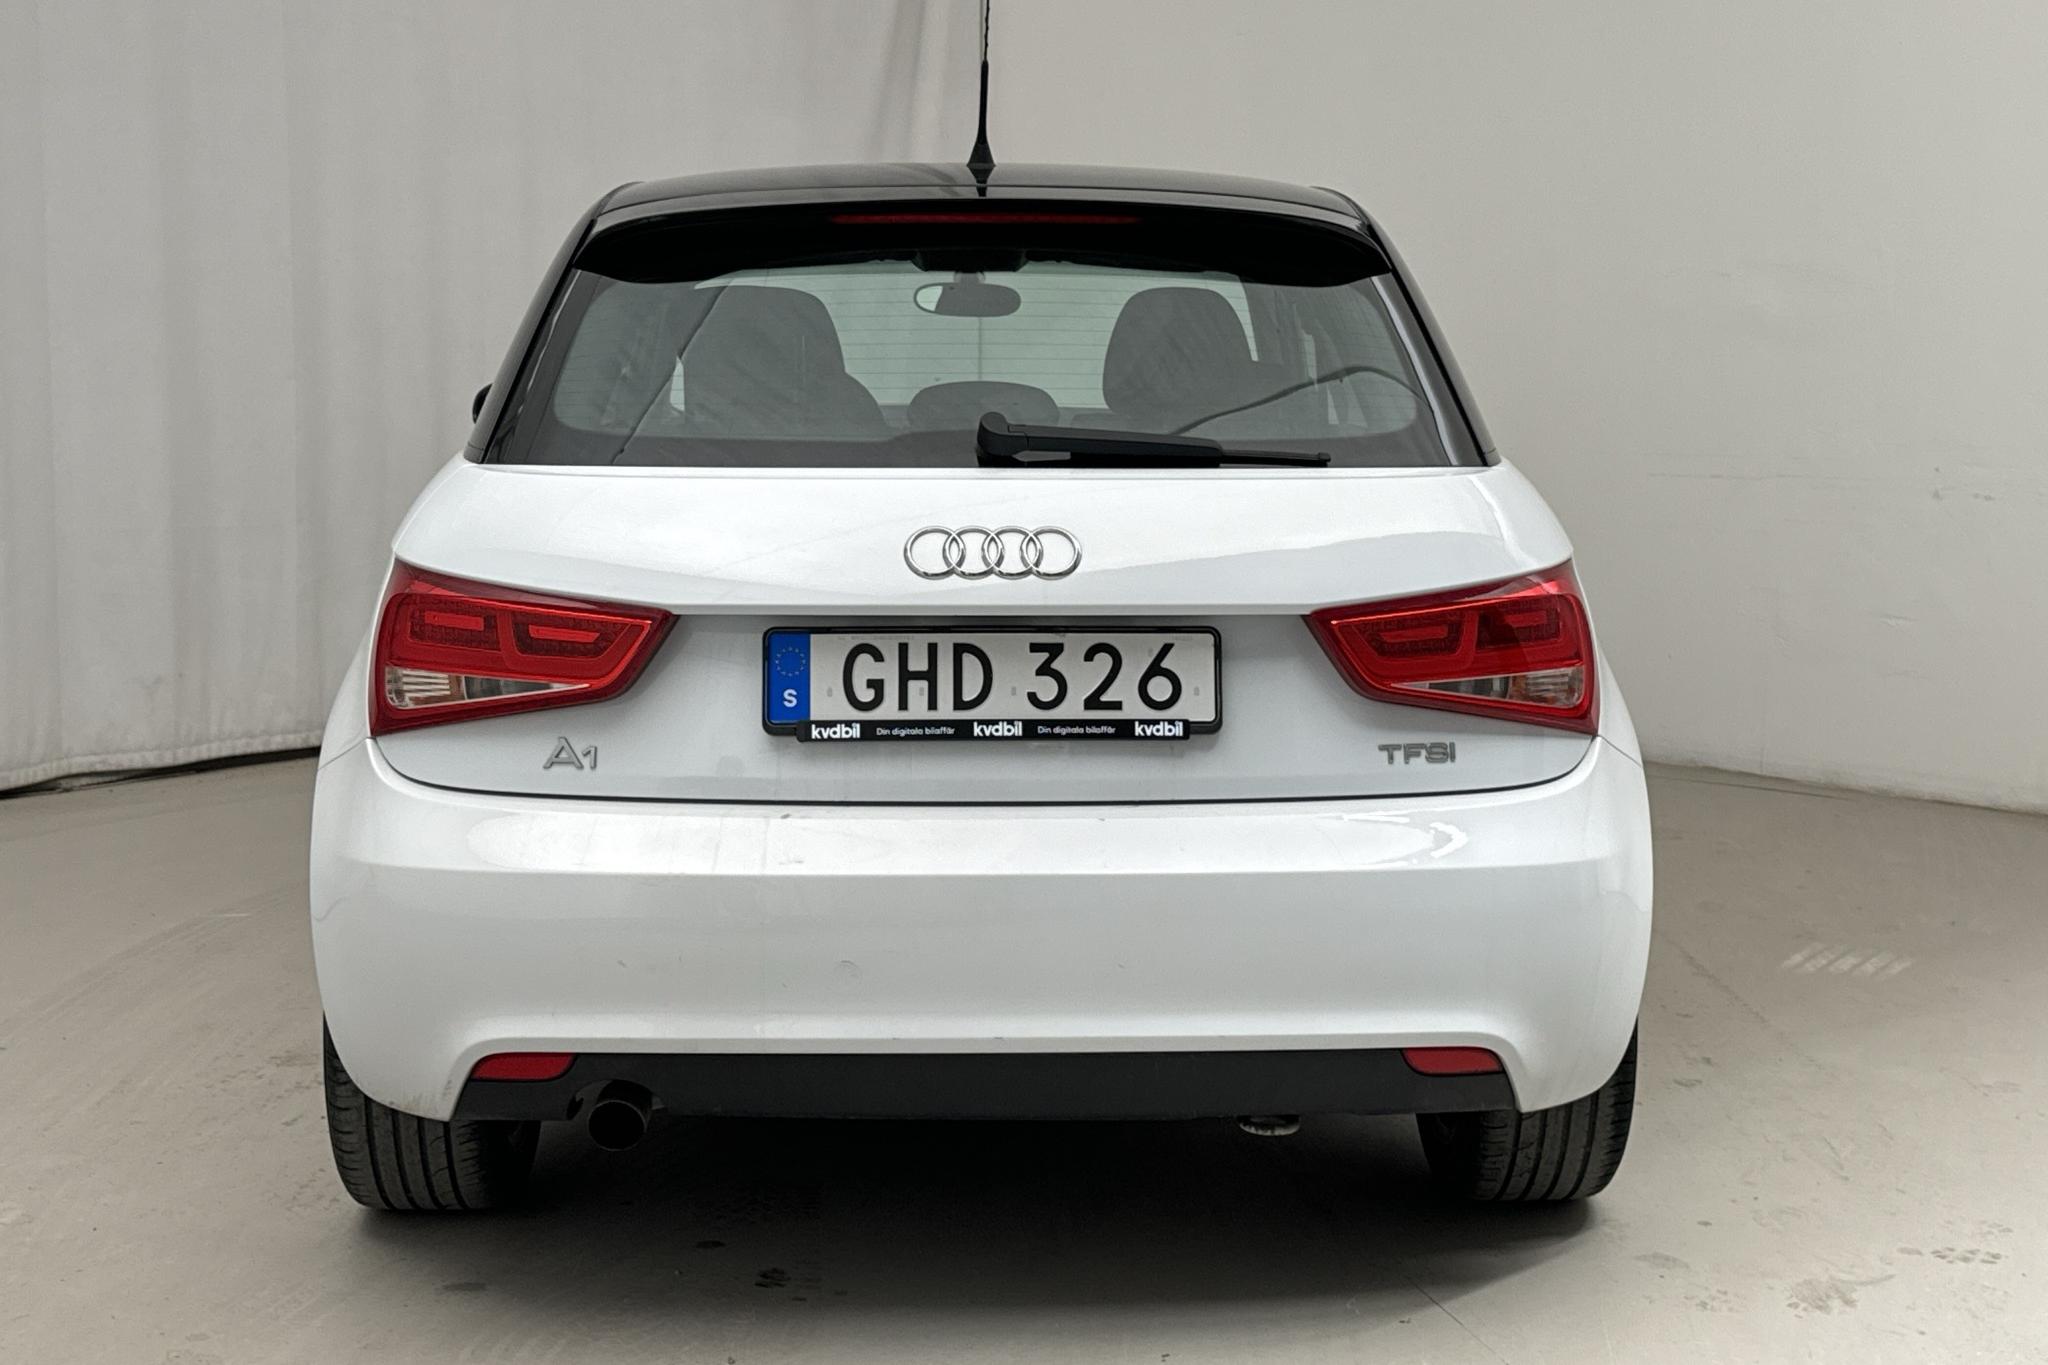 Audi A1 1.2 TFSI Sportback (86hk) - 99 480 km - Manual - white - 2014